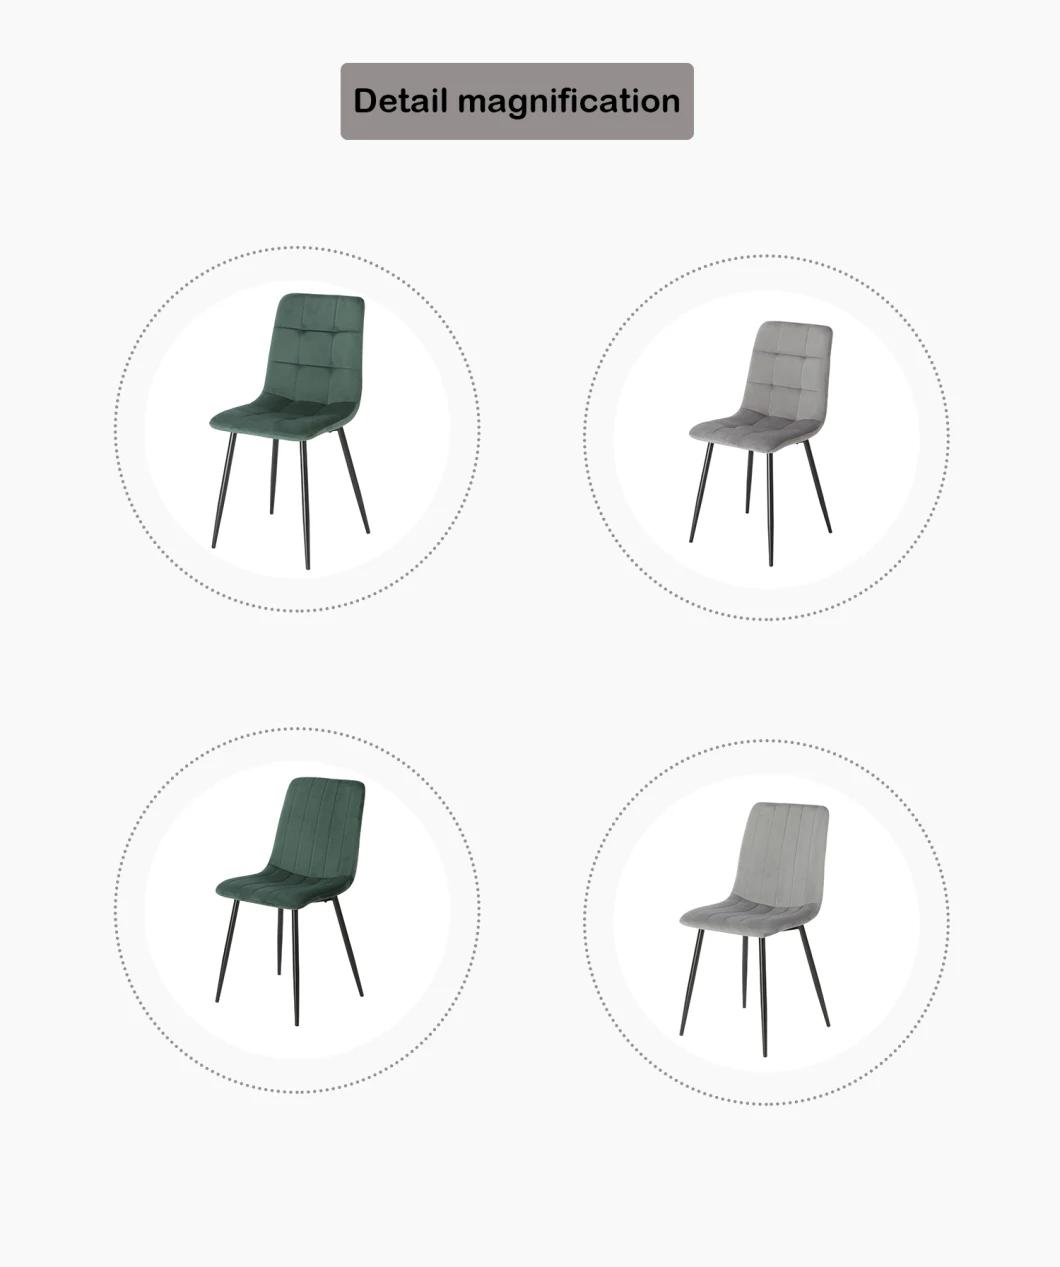 European Design Dining Room Furniture Ergonomic Blue Velvet Steel Leg Dining Chair